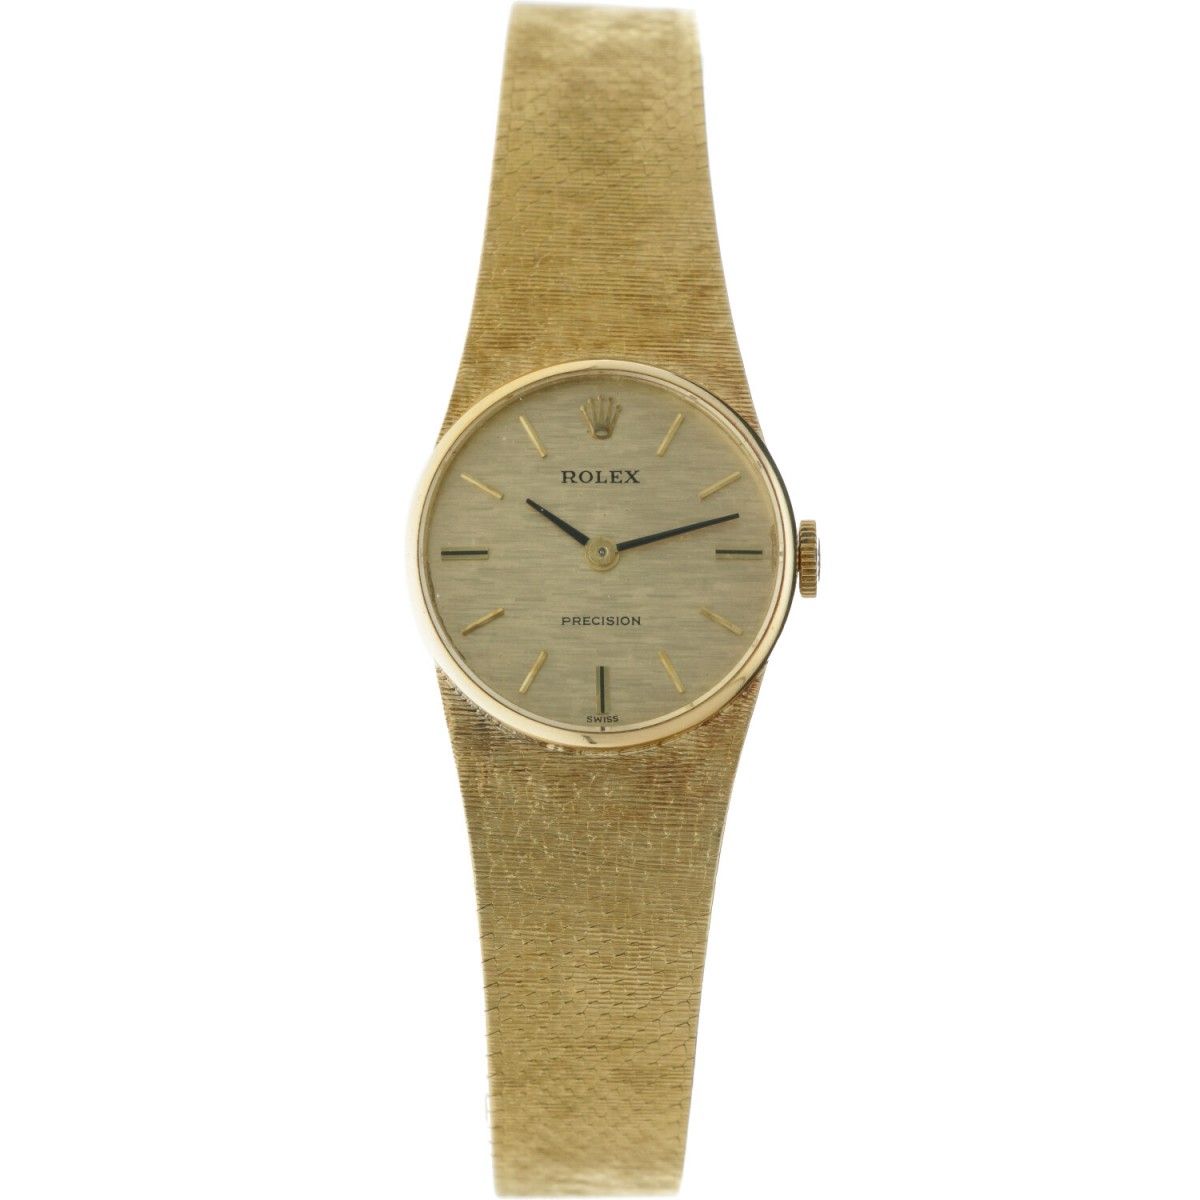 Rolex Precision - Ladies watch - apprx. 1971. Caja: oro amarillo (18 kt.) - braz&hellip;